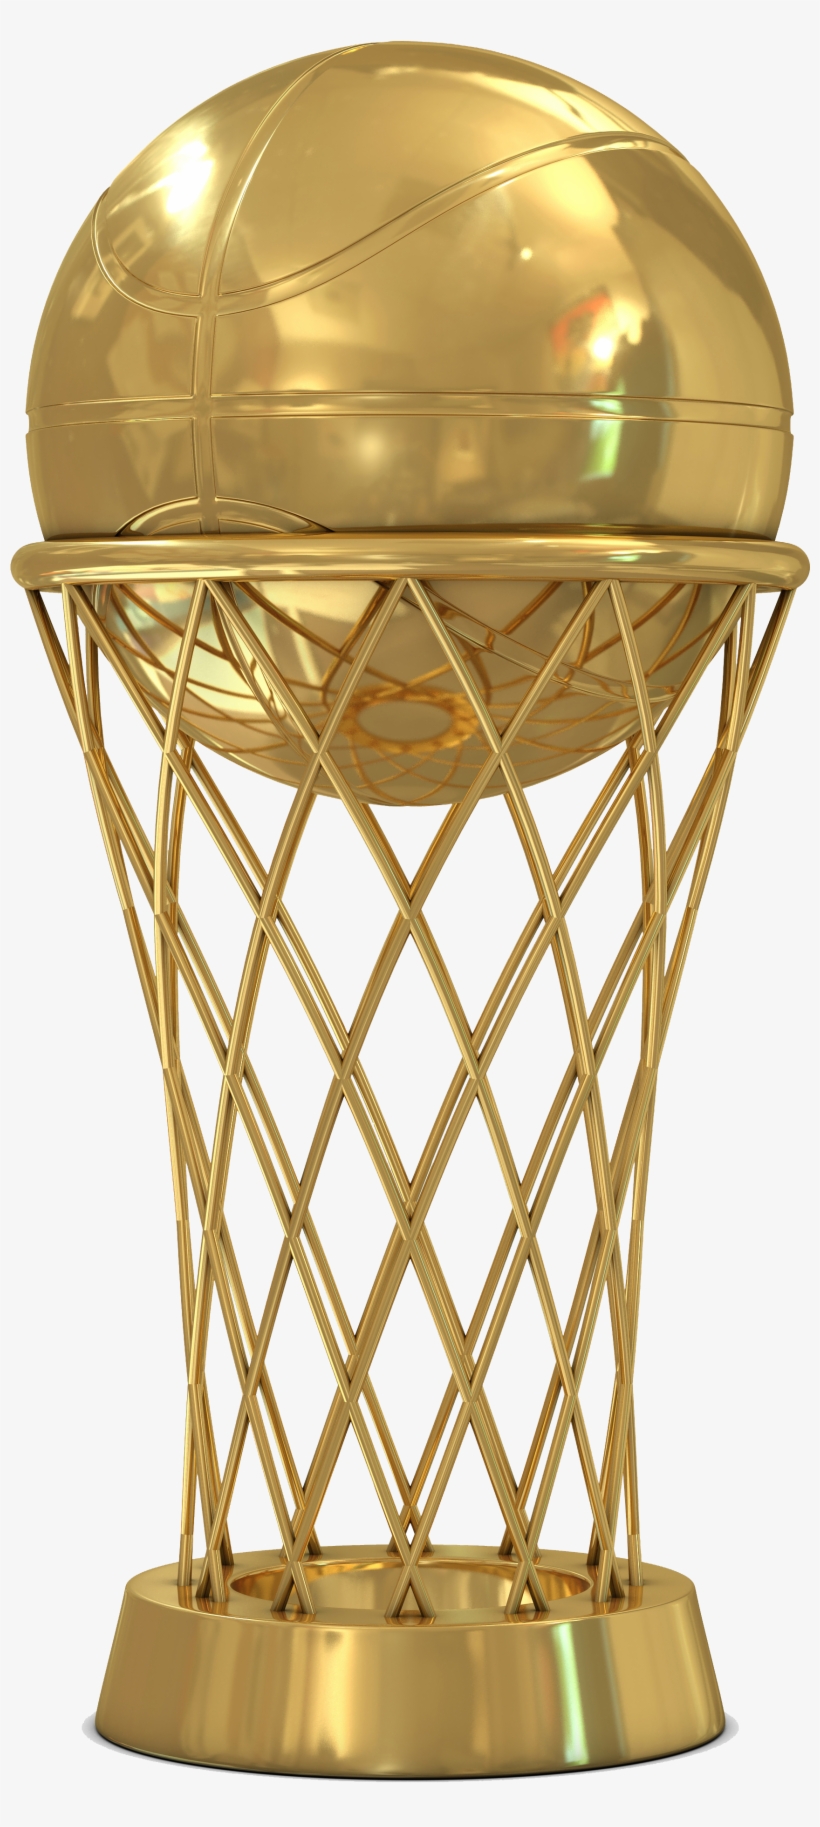 Trophy Basketball PNG Images & PSDs for Download